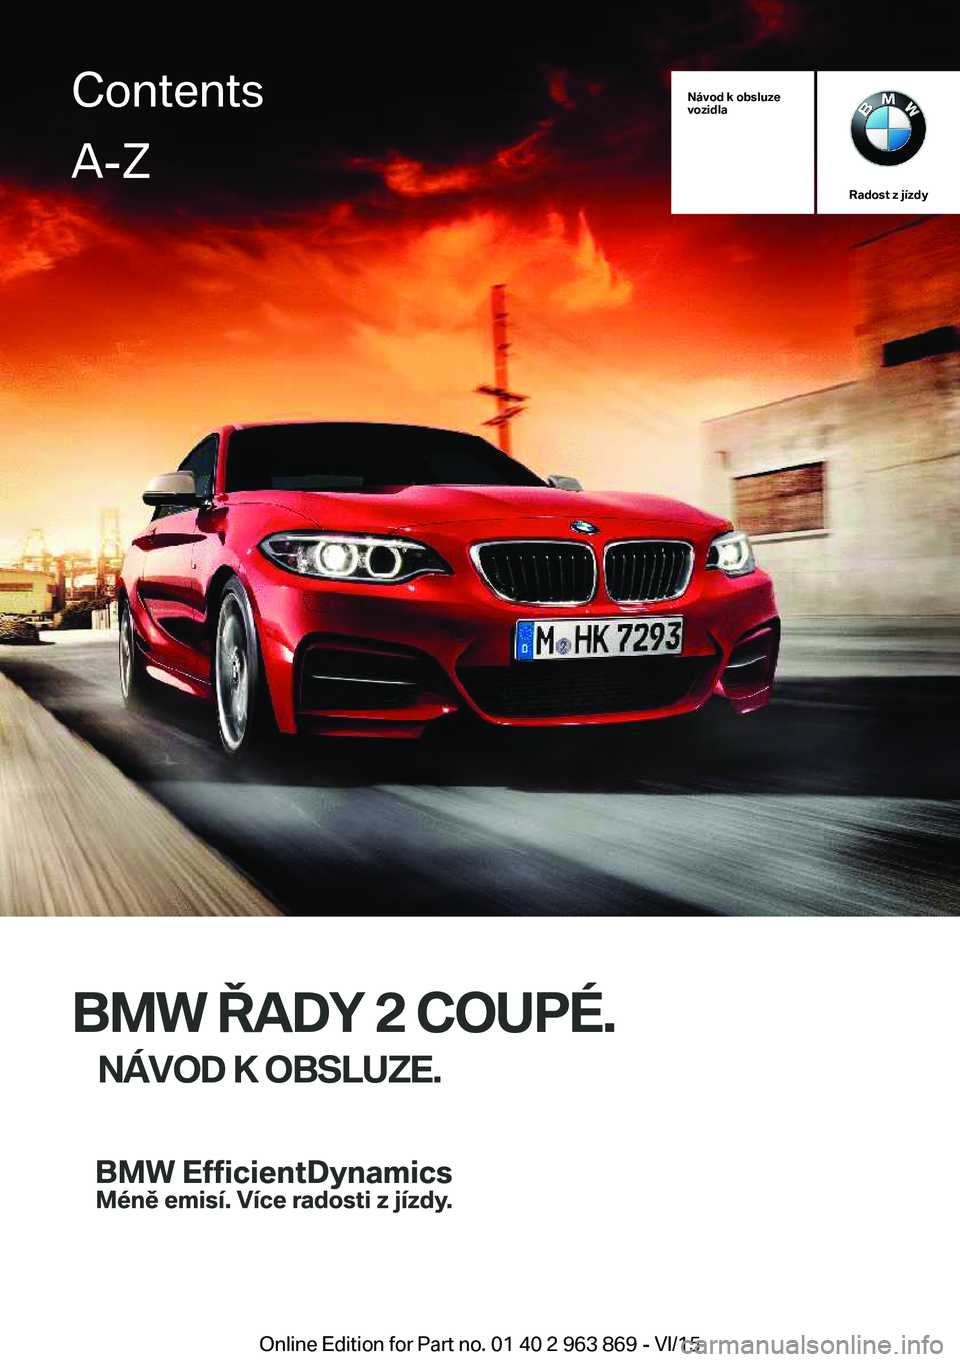 BMW 2 SERIES COUPE 2016  Návod na použití (in Czech) Návod k obsluze
vozidla
Radost z jízdy
BMW ŘADY 2 COUPÉ.
NÁVOD K OBSLUZE.
ContentsA-Z
Online Edition for Part no. 01 40 2 963 869 - VI/15   